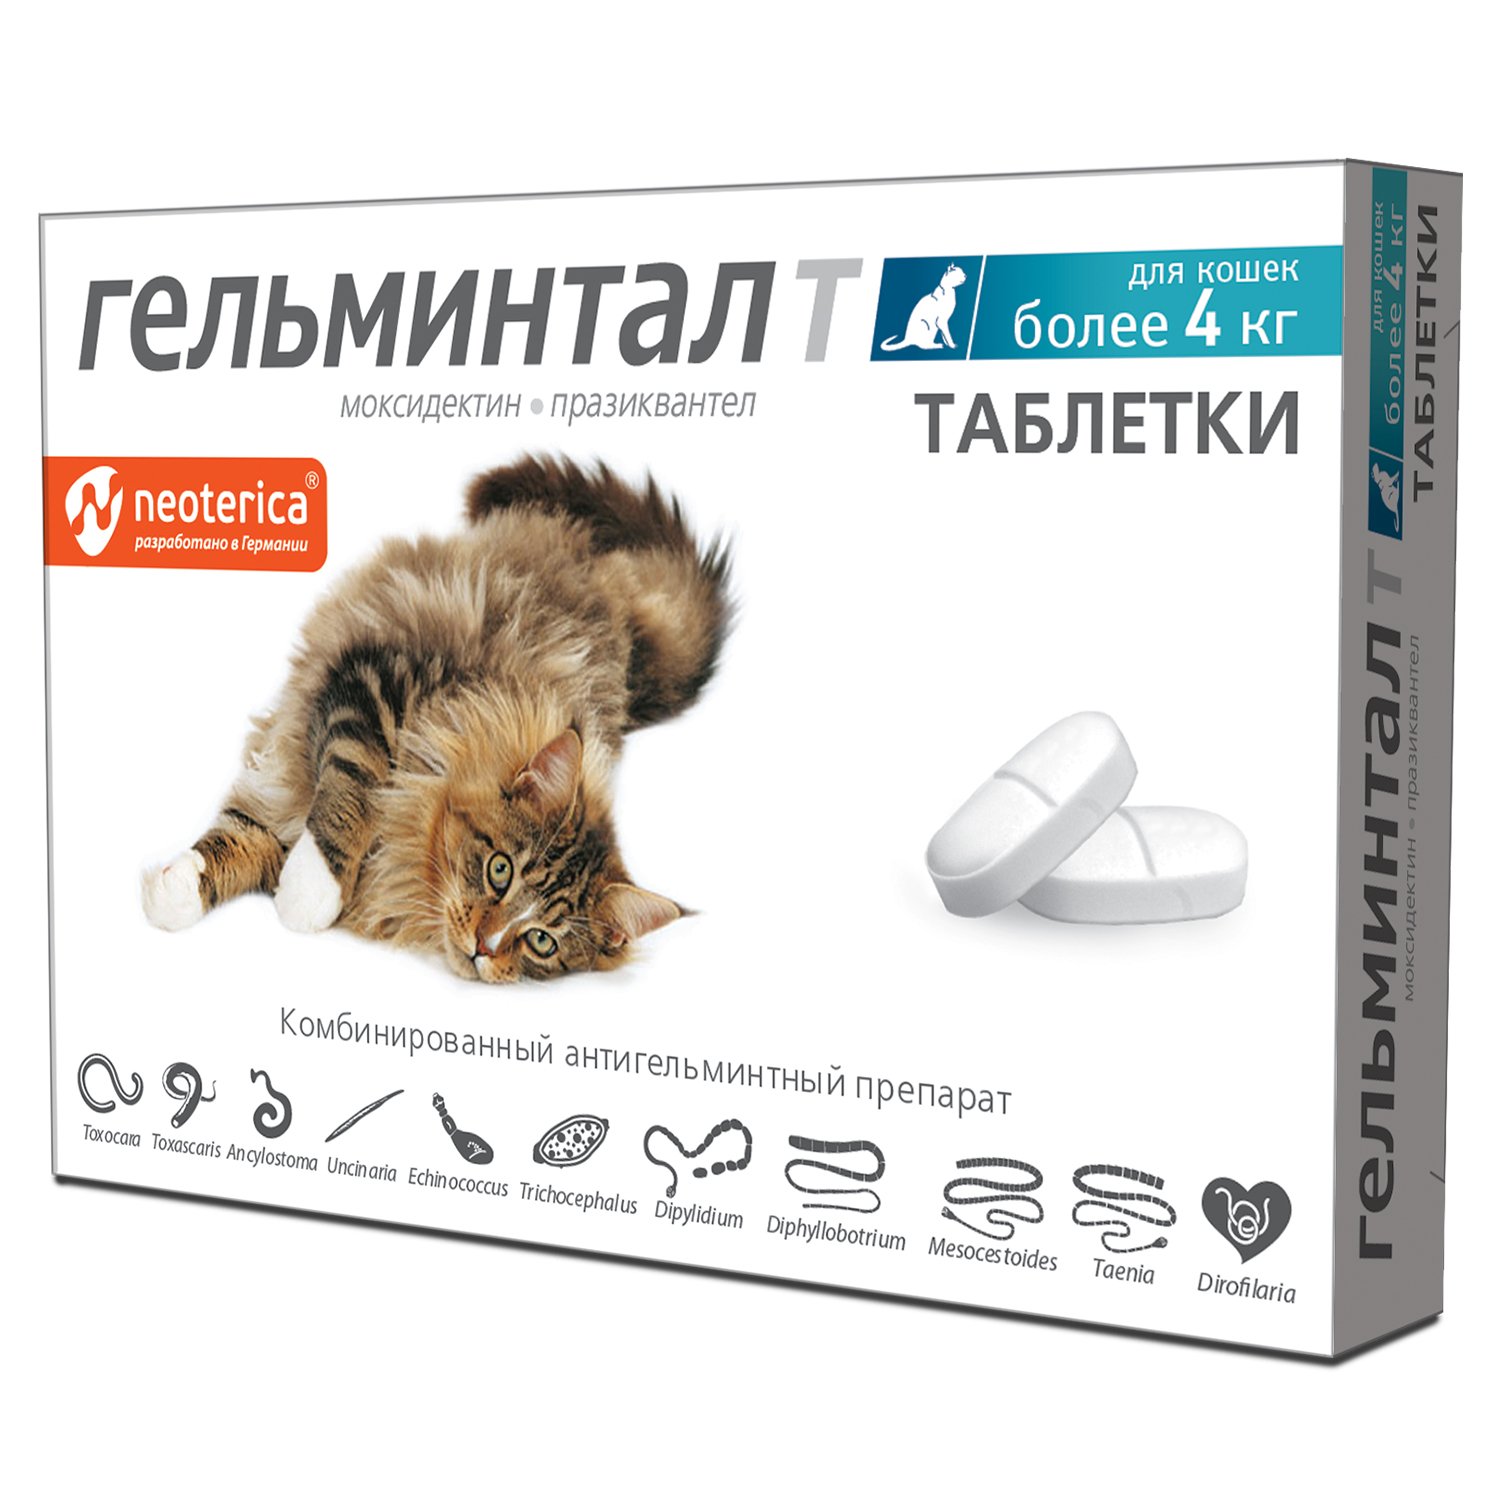 Антигельминтик для кошек Гельминтал более 4кг 2шт  по цене 439 .